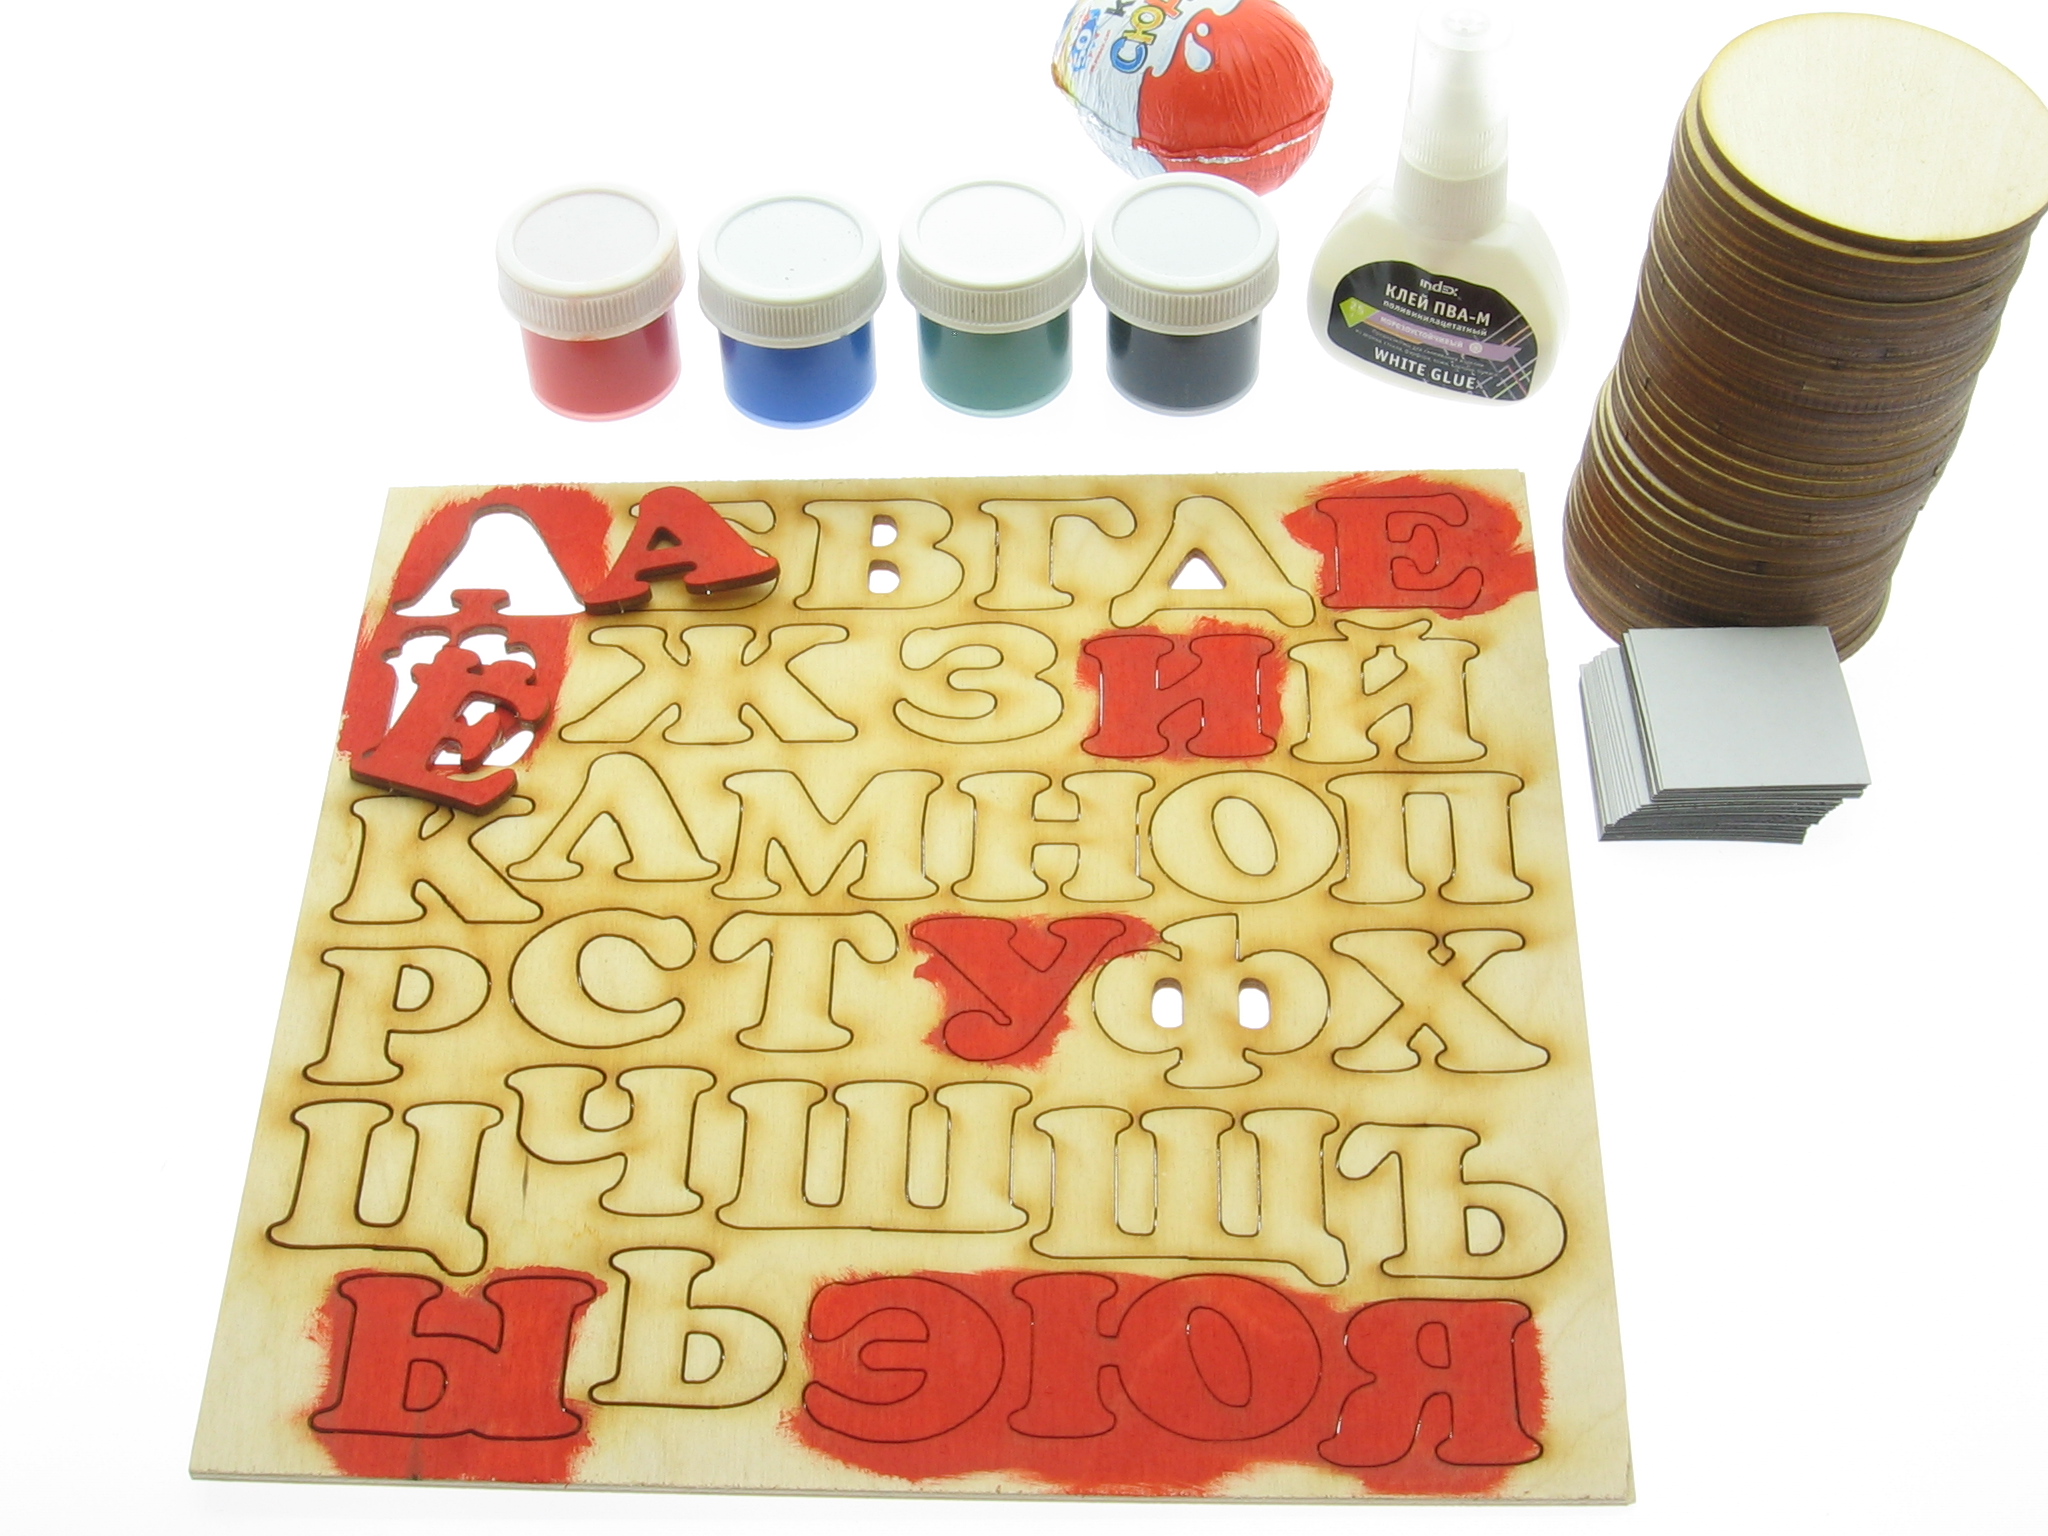 Фото-инструкция, изготовление деревянной магнитной азбуки своими руками от компании "Шоп Чилдрен Той".  Поделка раскраска для детей дошкольного возраста в детский сад.